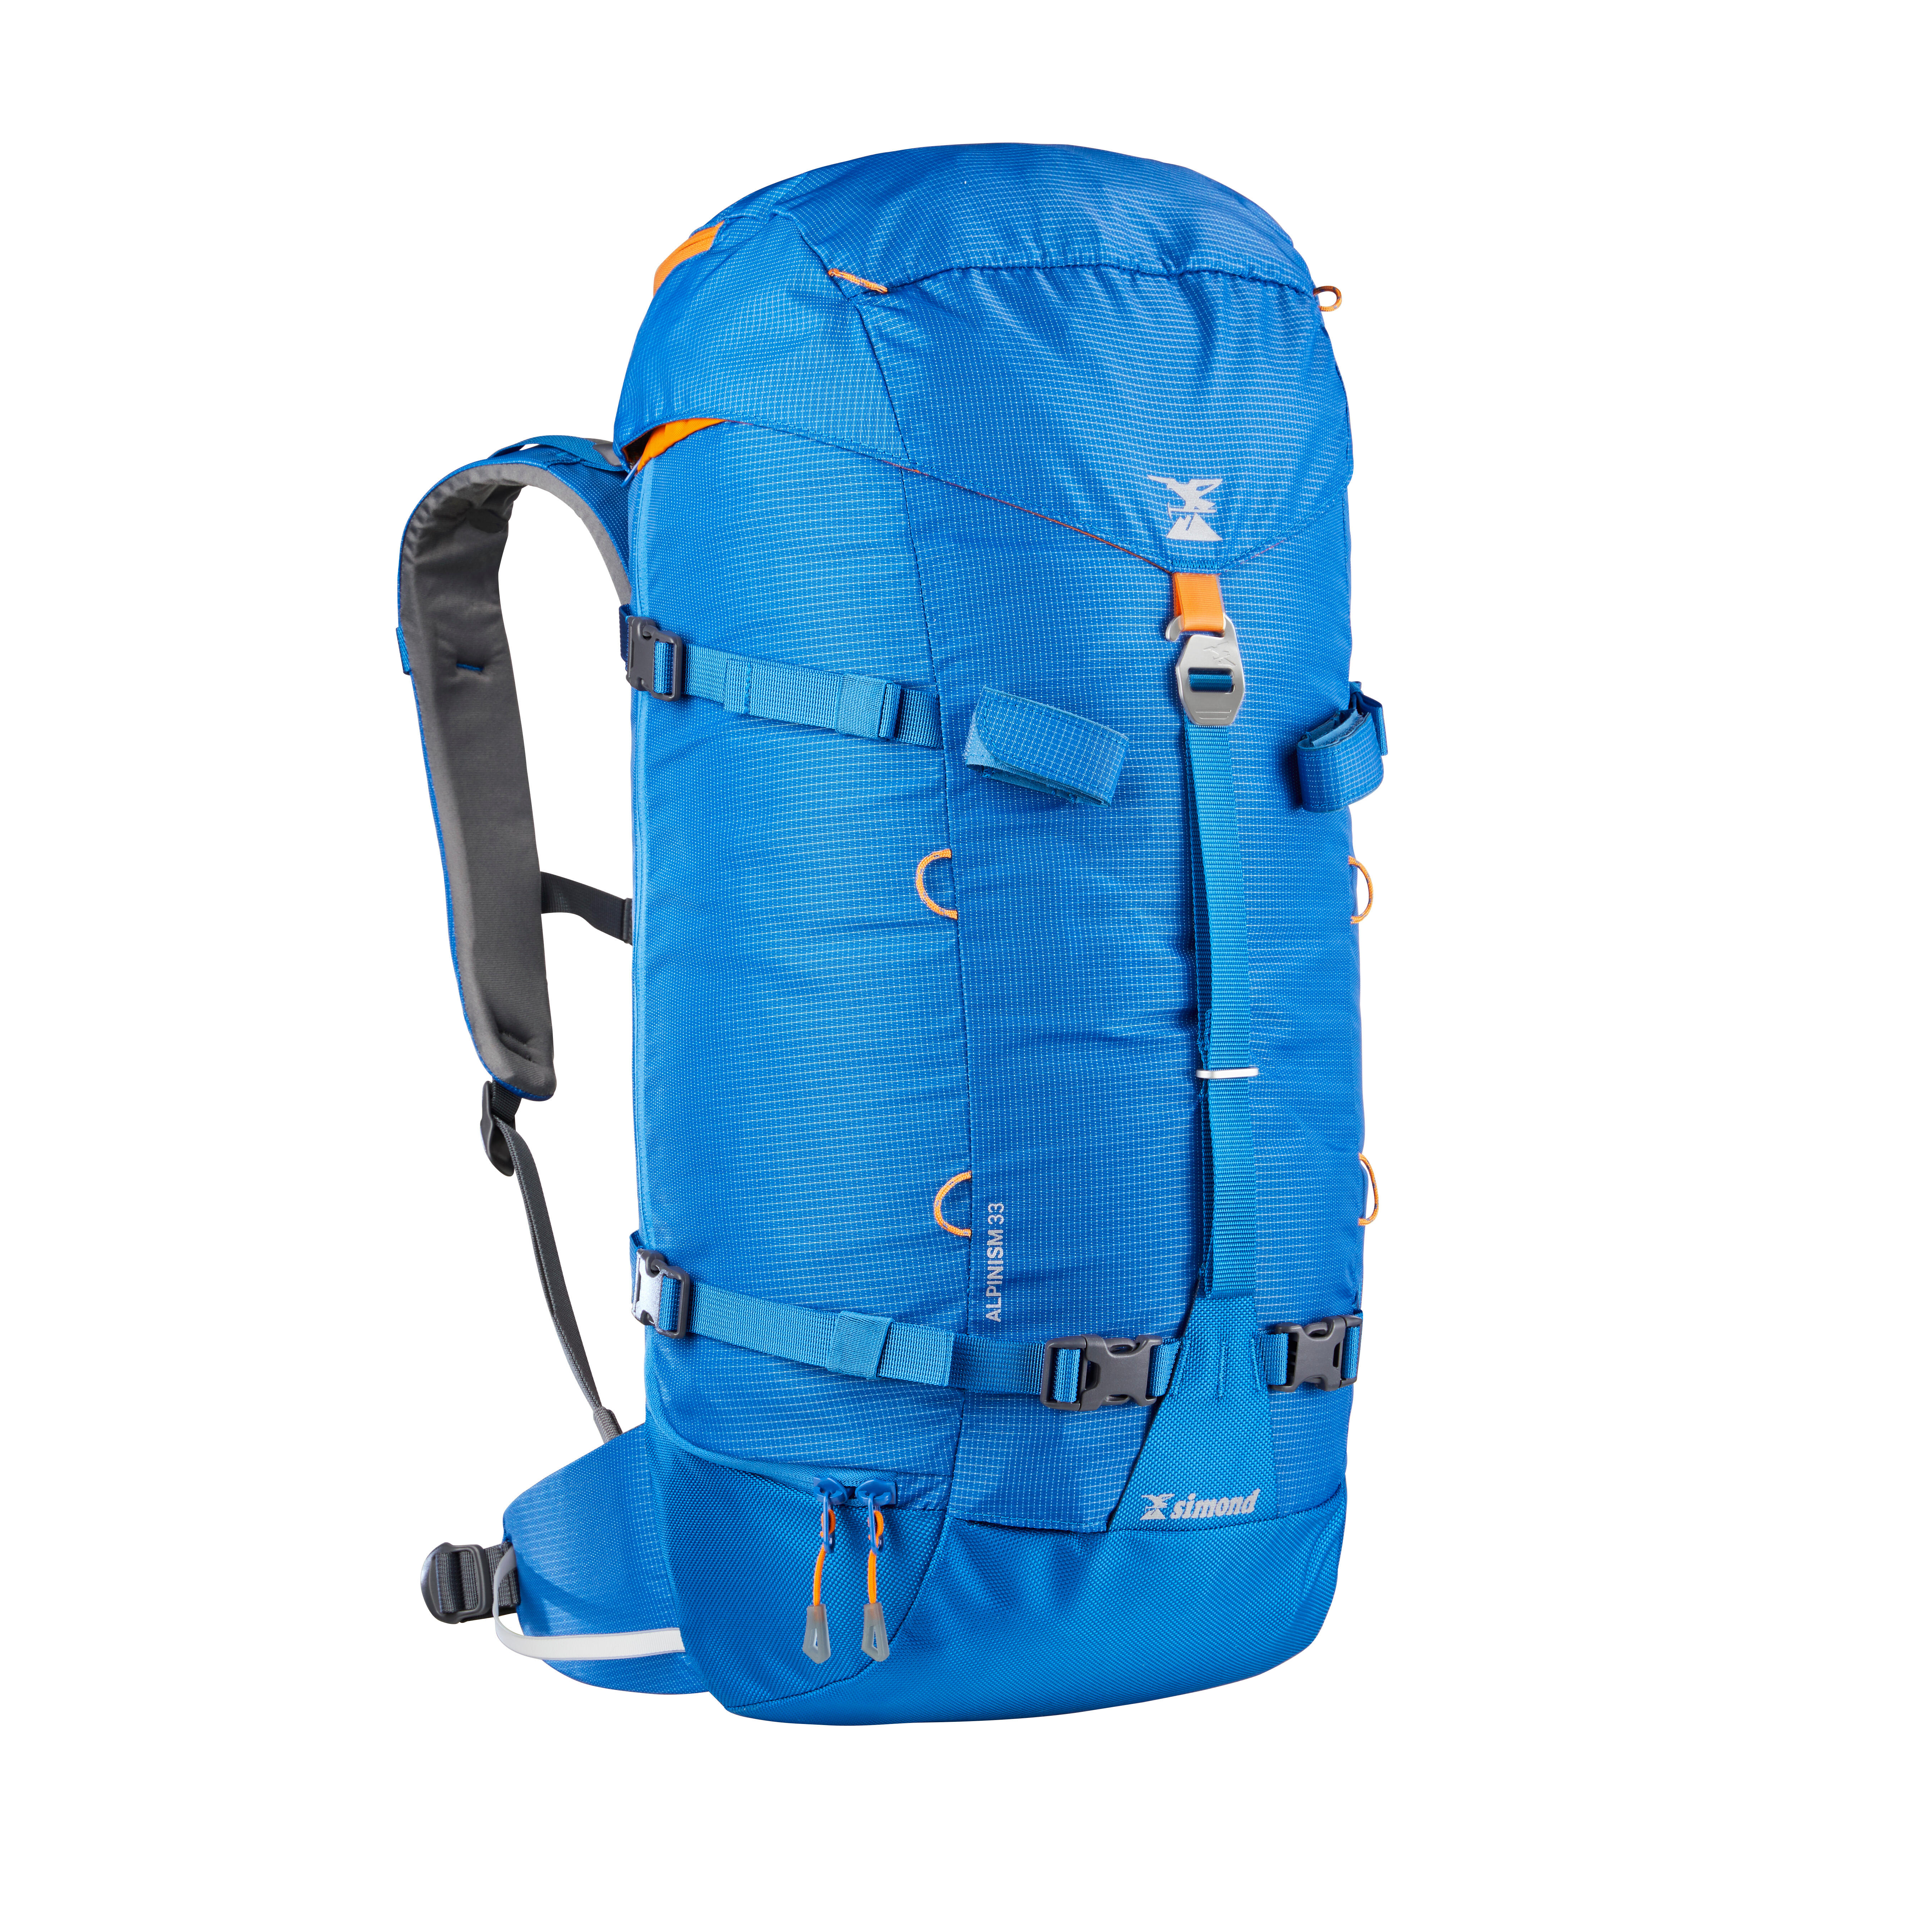 SIMOND Zaino alpinismo Alpinism 33, 33 litri azzurro